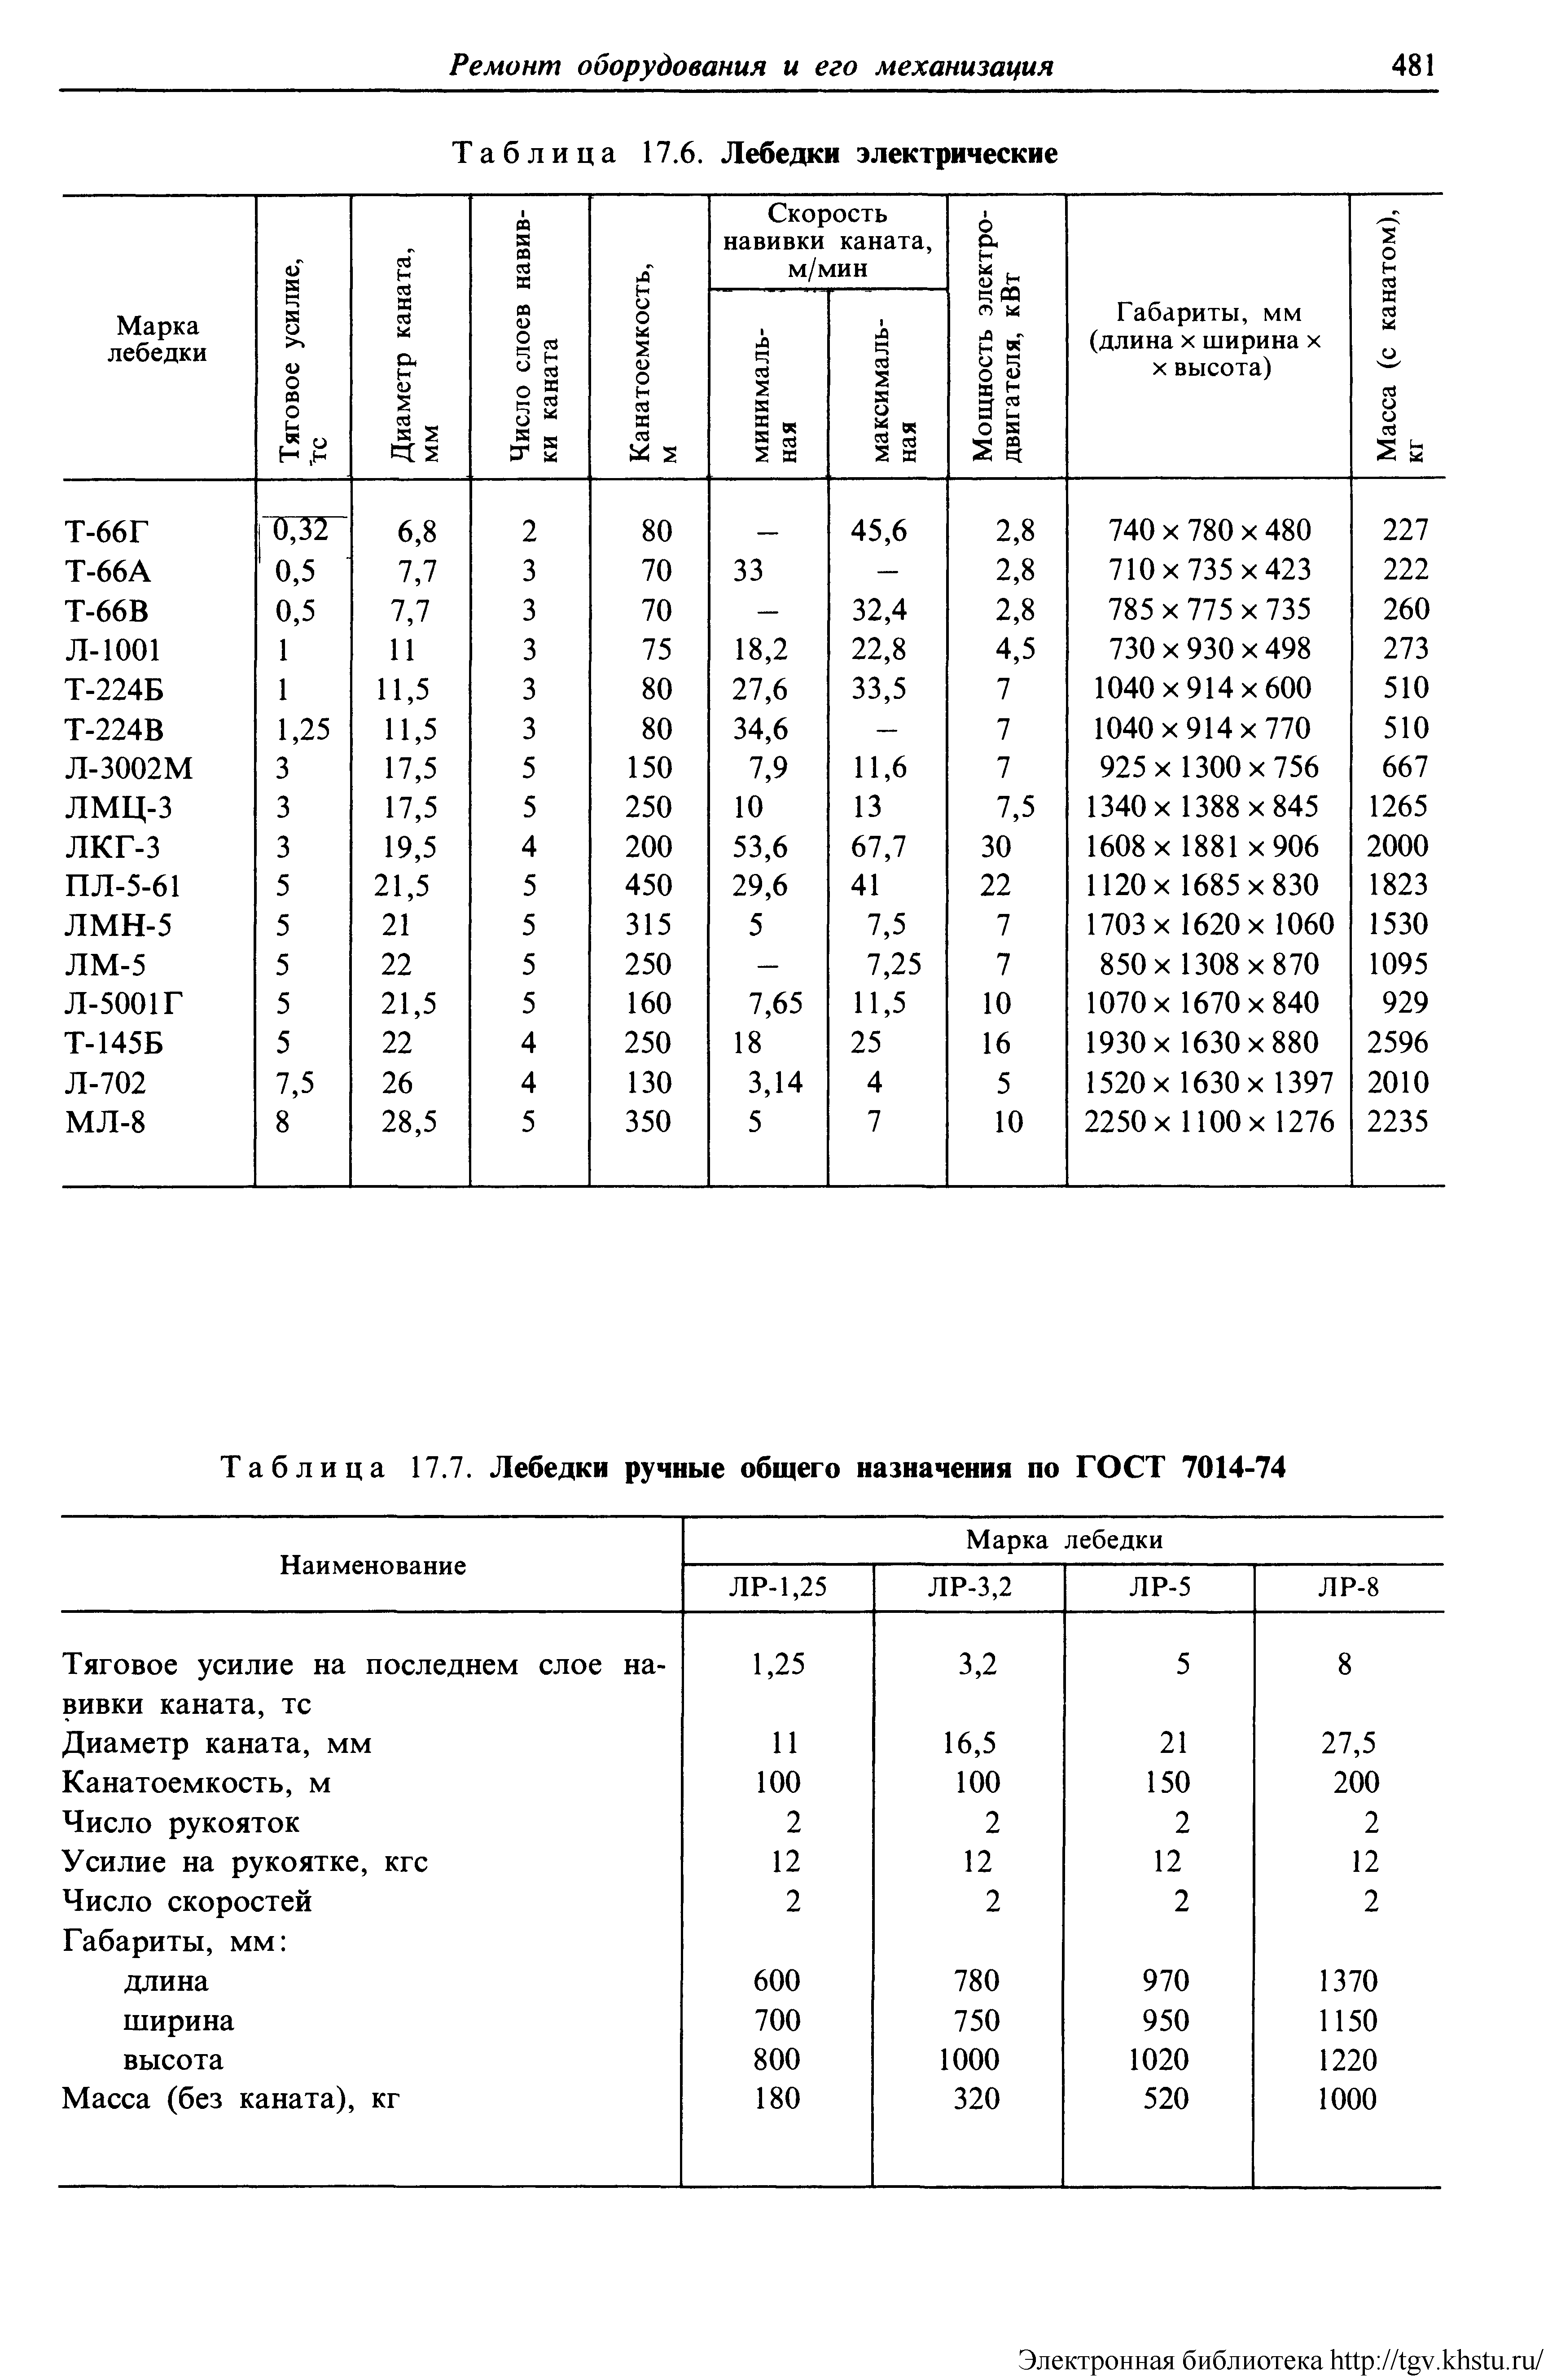 Таблица 17.7. Лебедки ручные общего назначения по ГОСТ 7014-74
